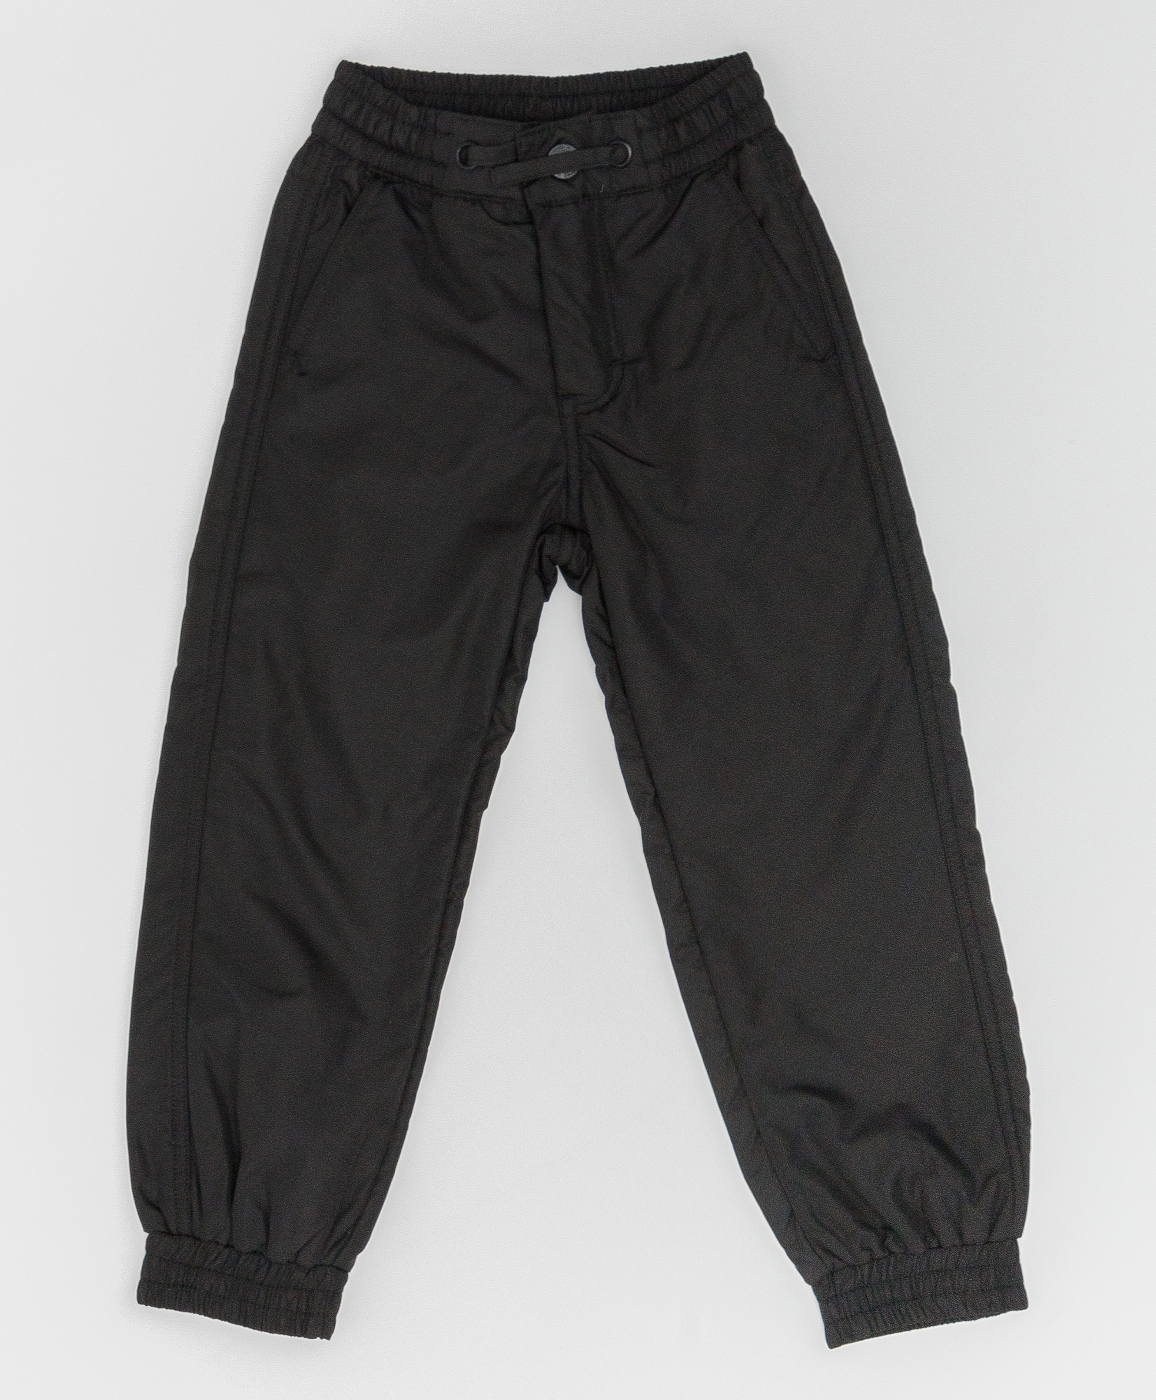 Черные демисезонные брюки Button Blue 220BBBMC64030800, размер 122, цвет черный regular fit / прямые - фото 1